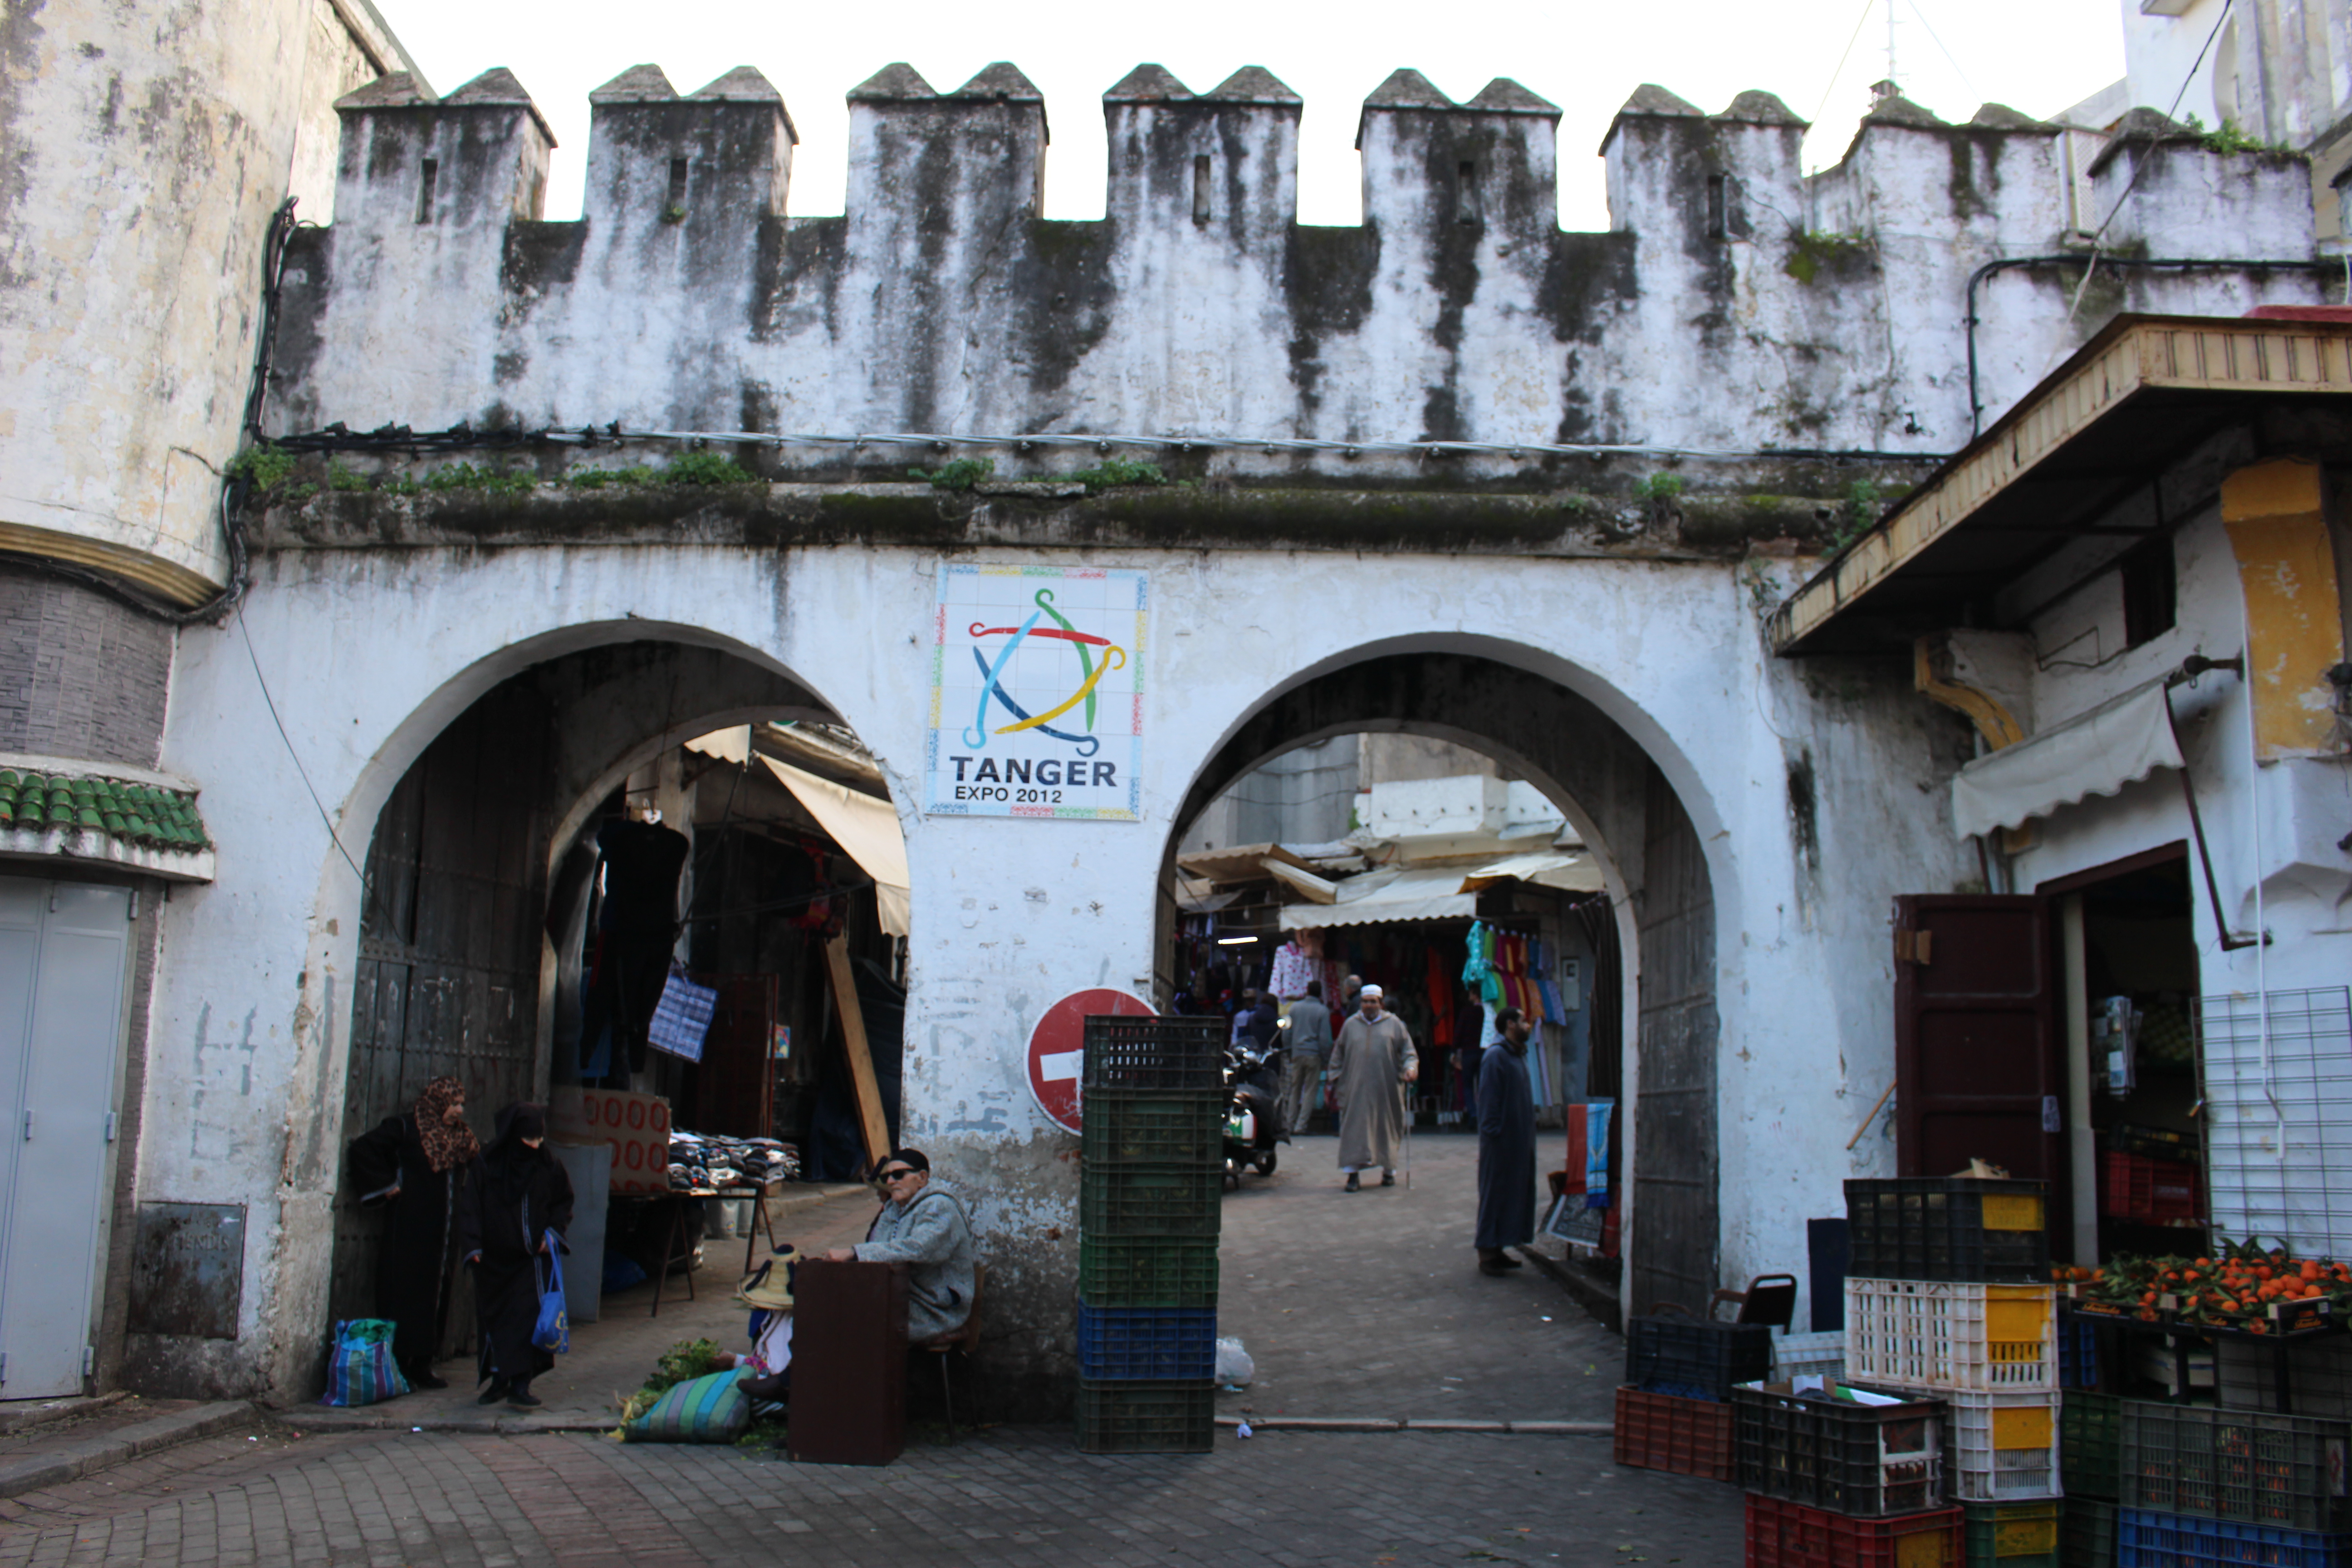 أحد أبواب مدينة طنجة القديمة - المغرب. الصورة: وصال الشيخ